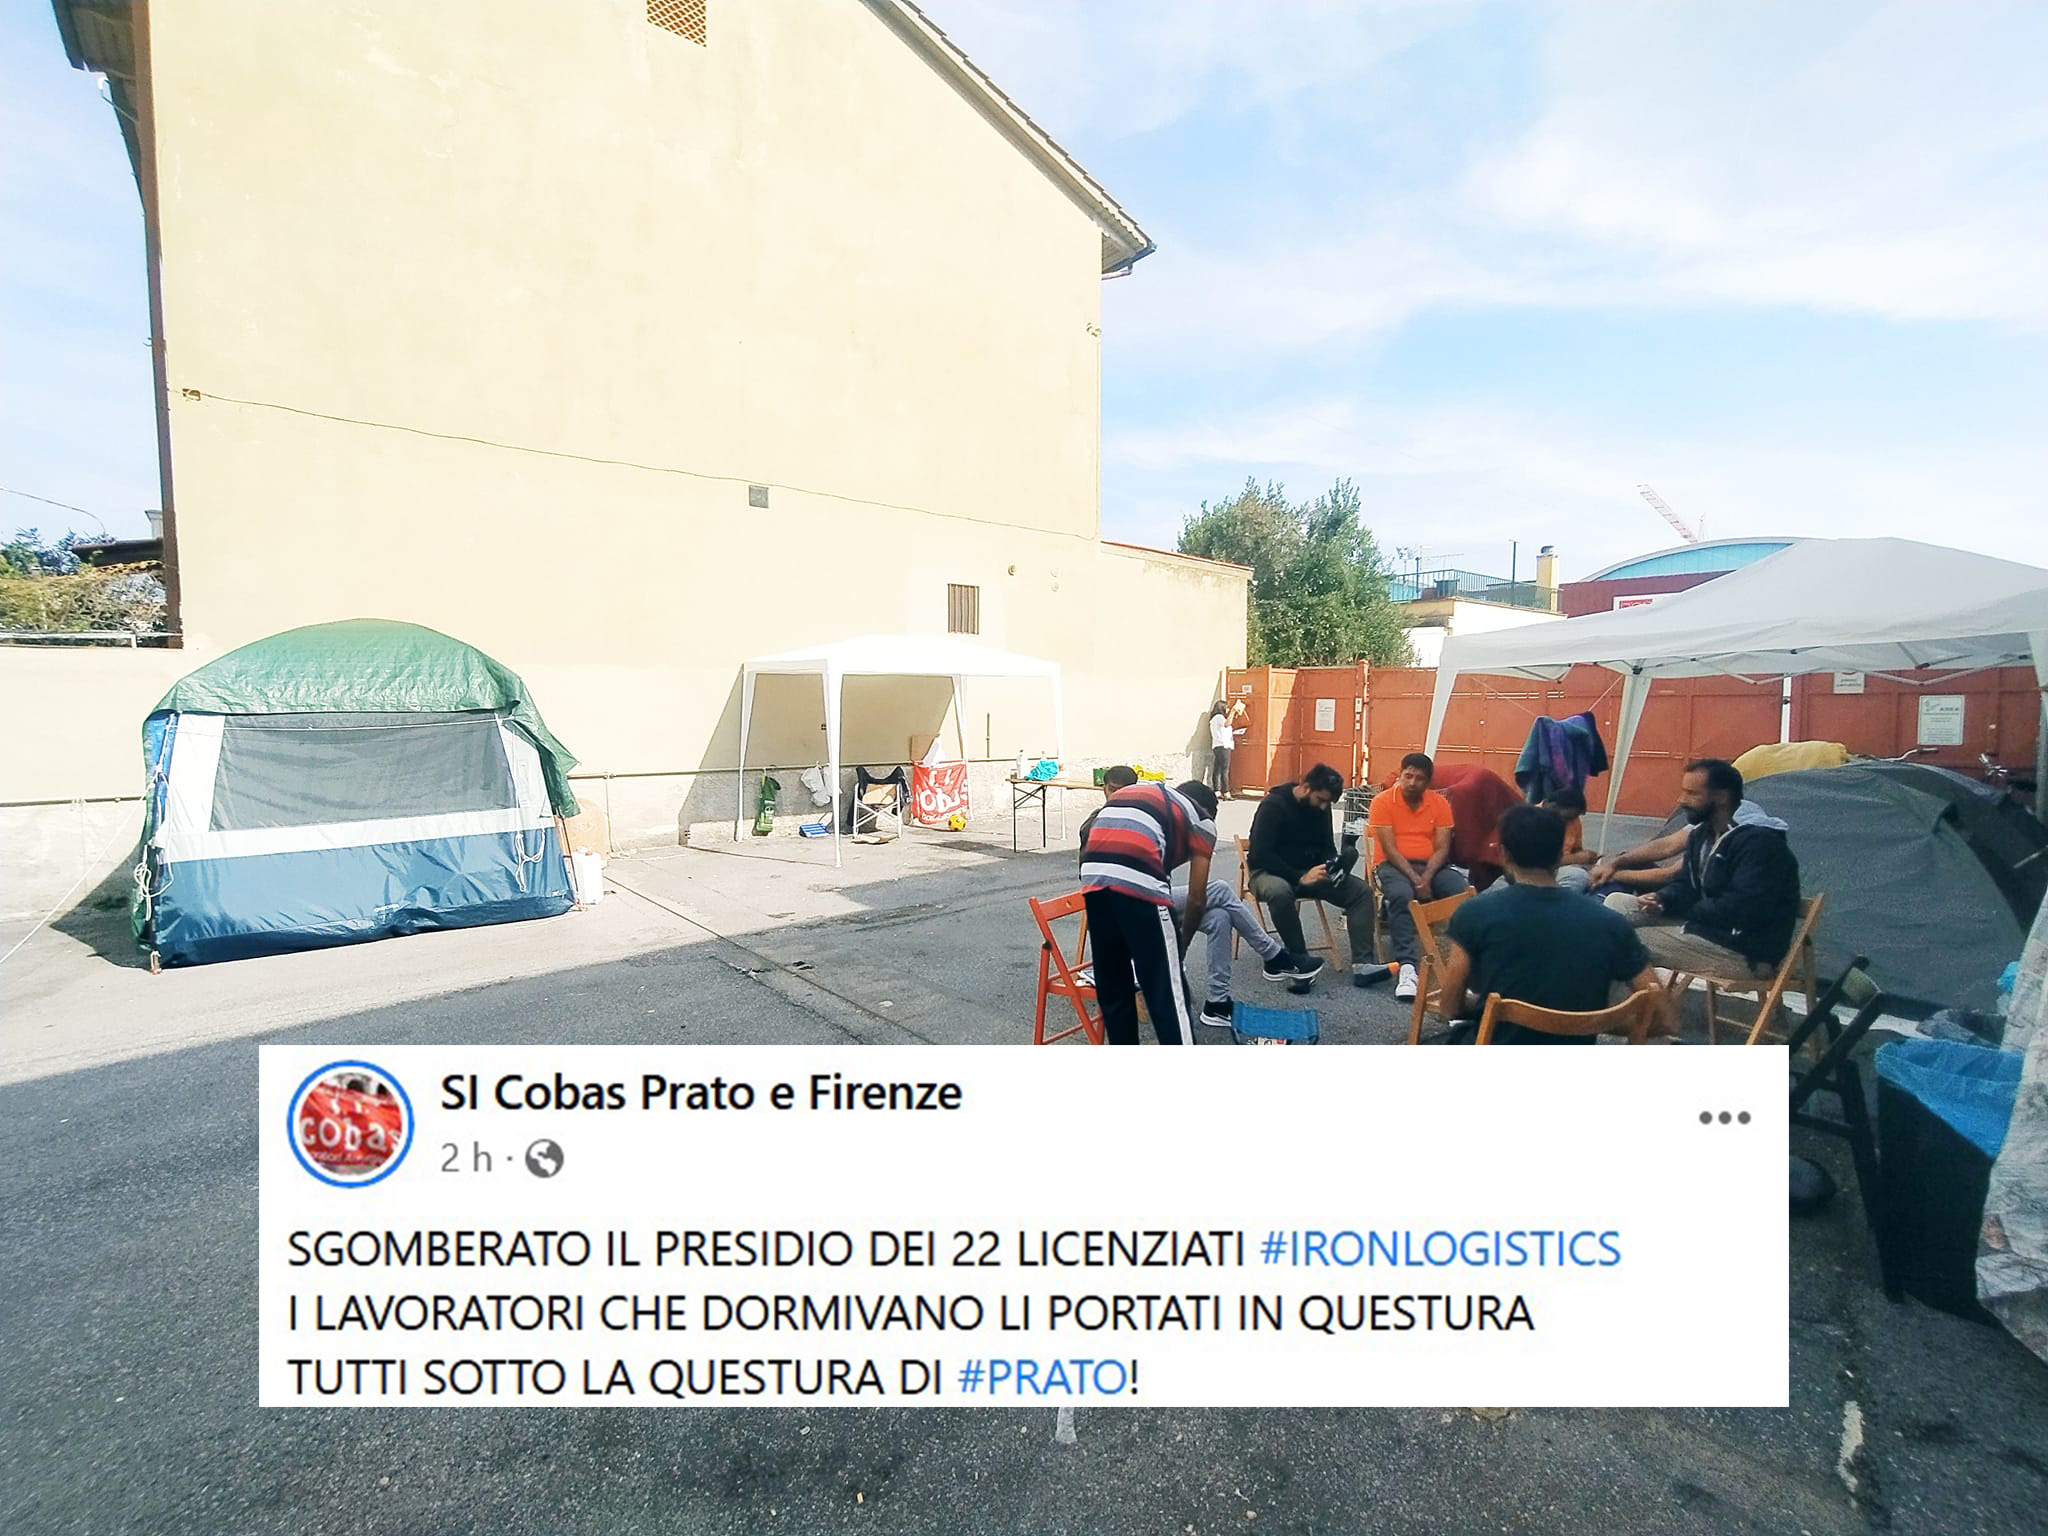 Prato: sgomberato il presidio dei 22 licenziati IronLogistic, lavoratori portati in questura – Osservatorio Repressione